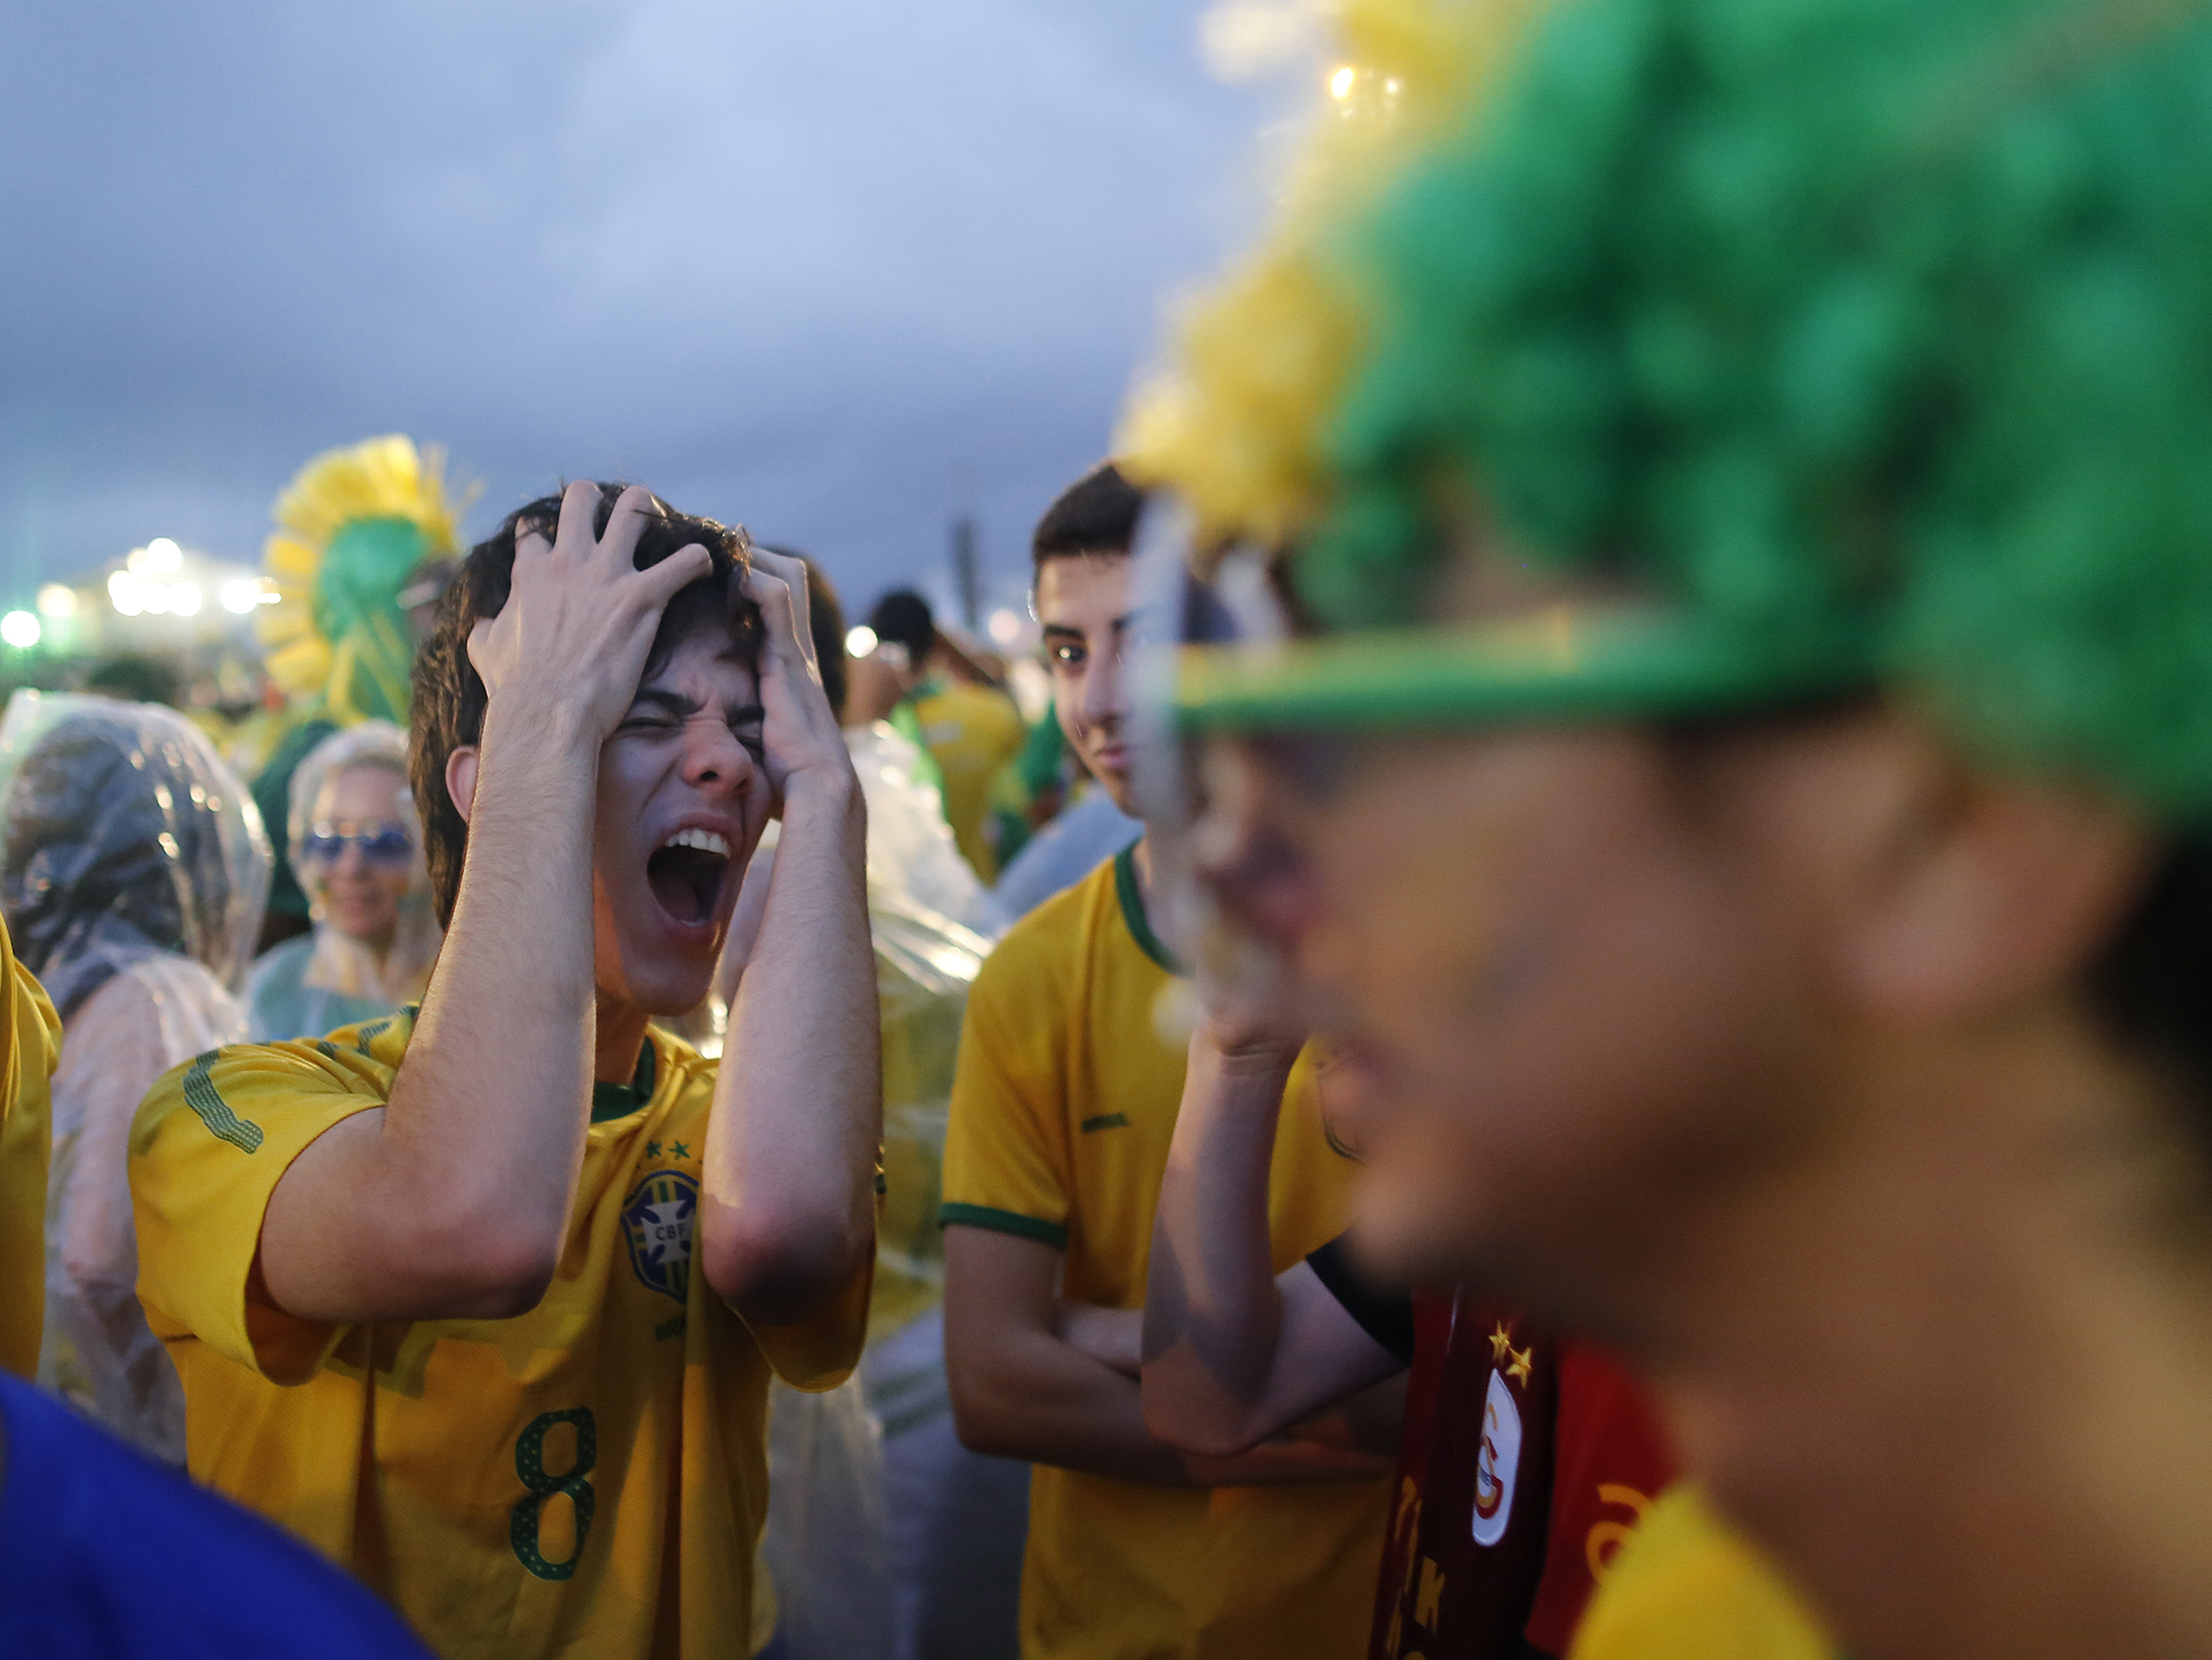 Германия 1 июля. ЧМ 2014 Германия Бразилия 7:1. Германия-Бразилия 7-1 фанаты Бразилии. Бразилия Германия 1-7 болельщики. ЧМ 2014 Германия - Бразилия болельщики.